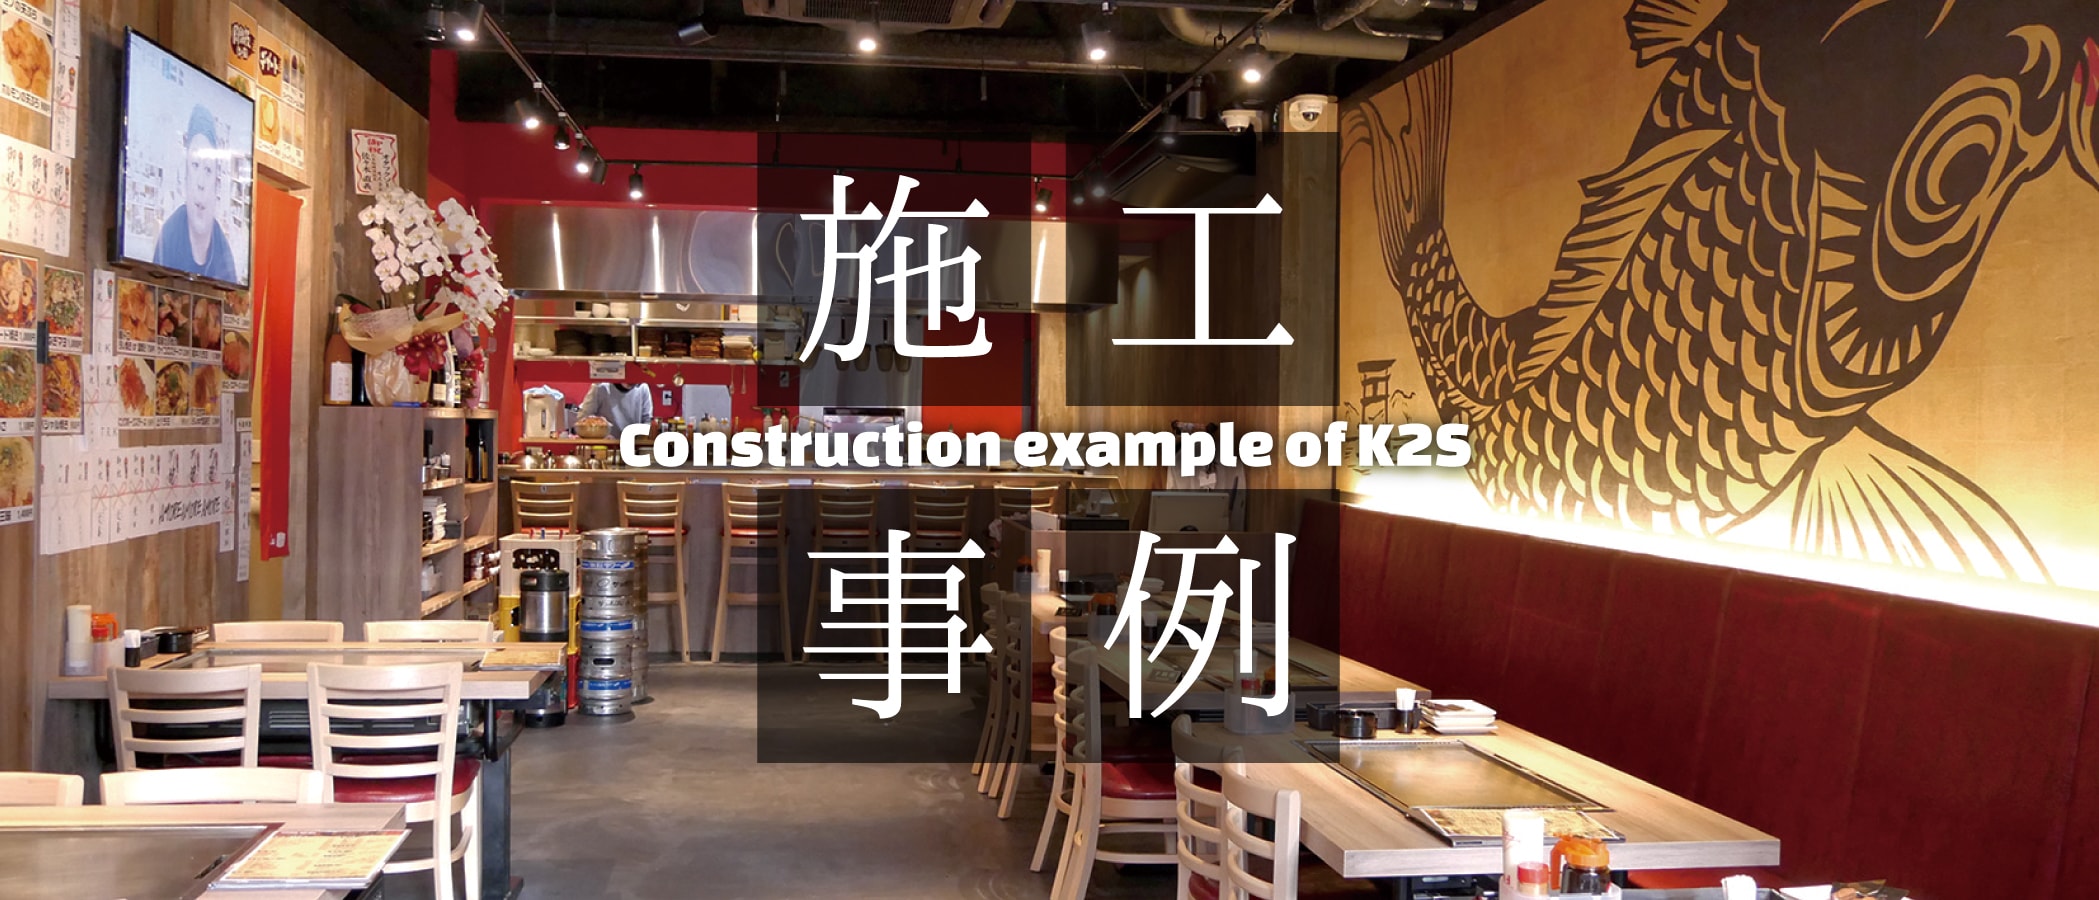 施工事例 -Construction example of K2S-